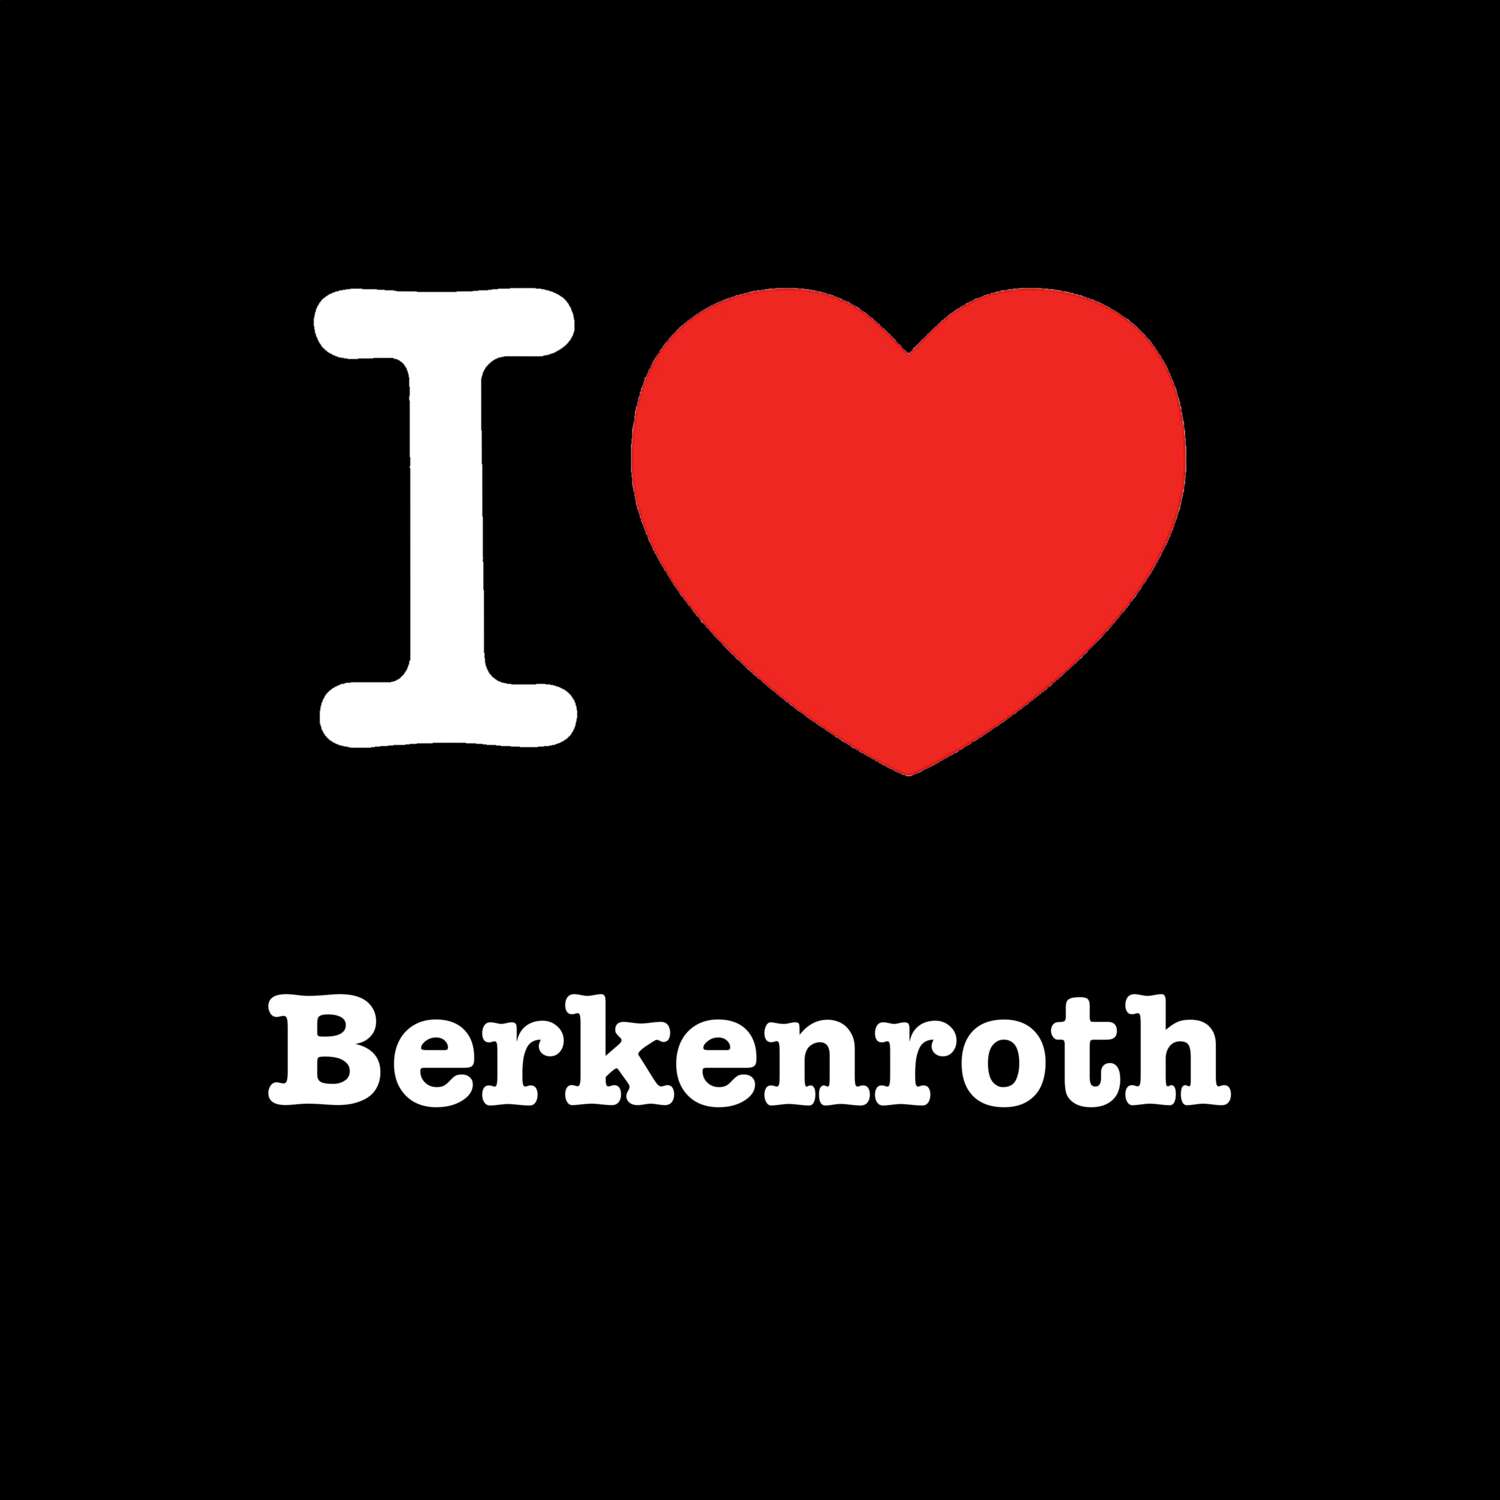 Berkenroth T-Shirt »I love«